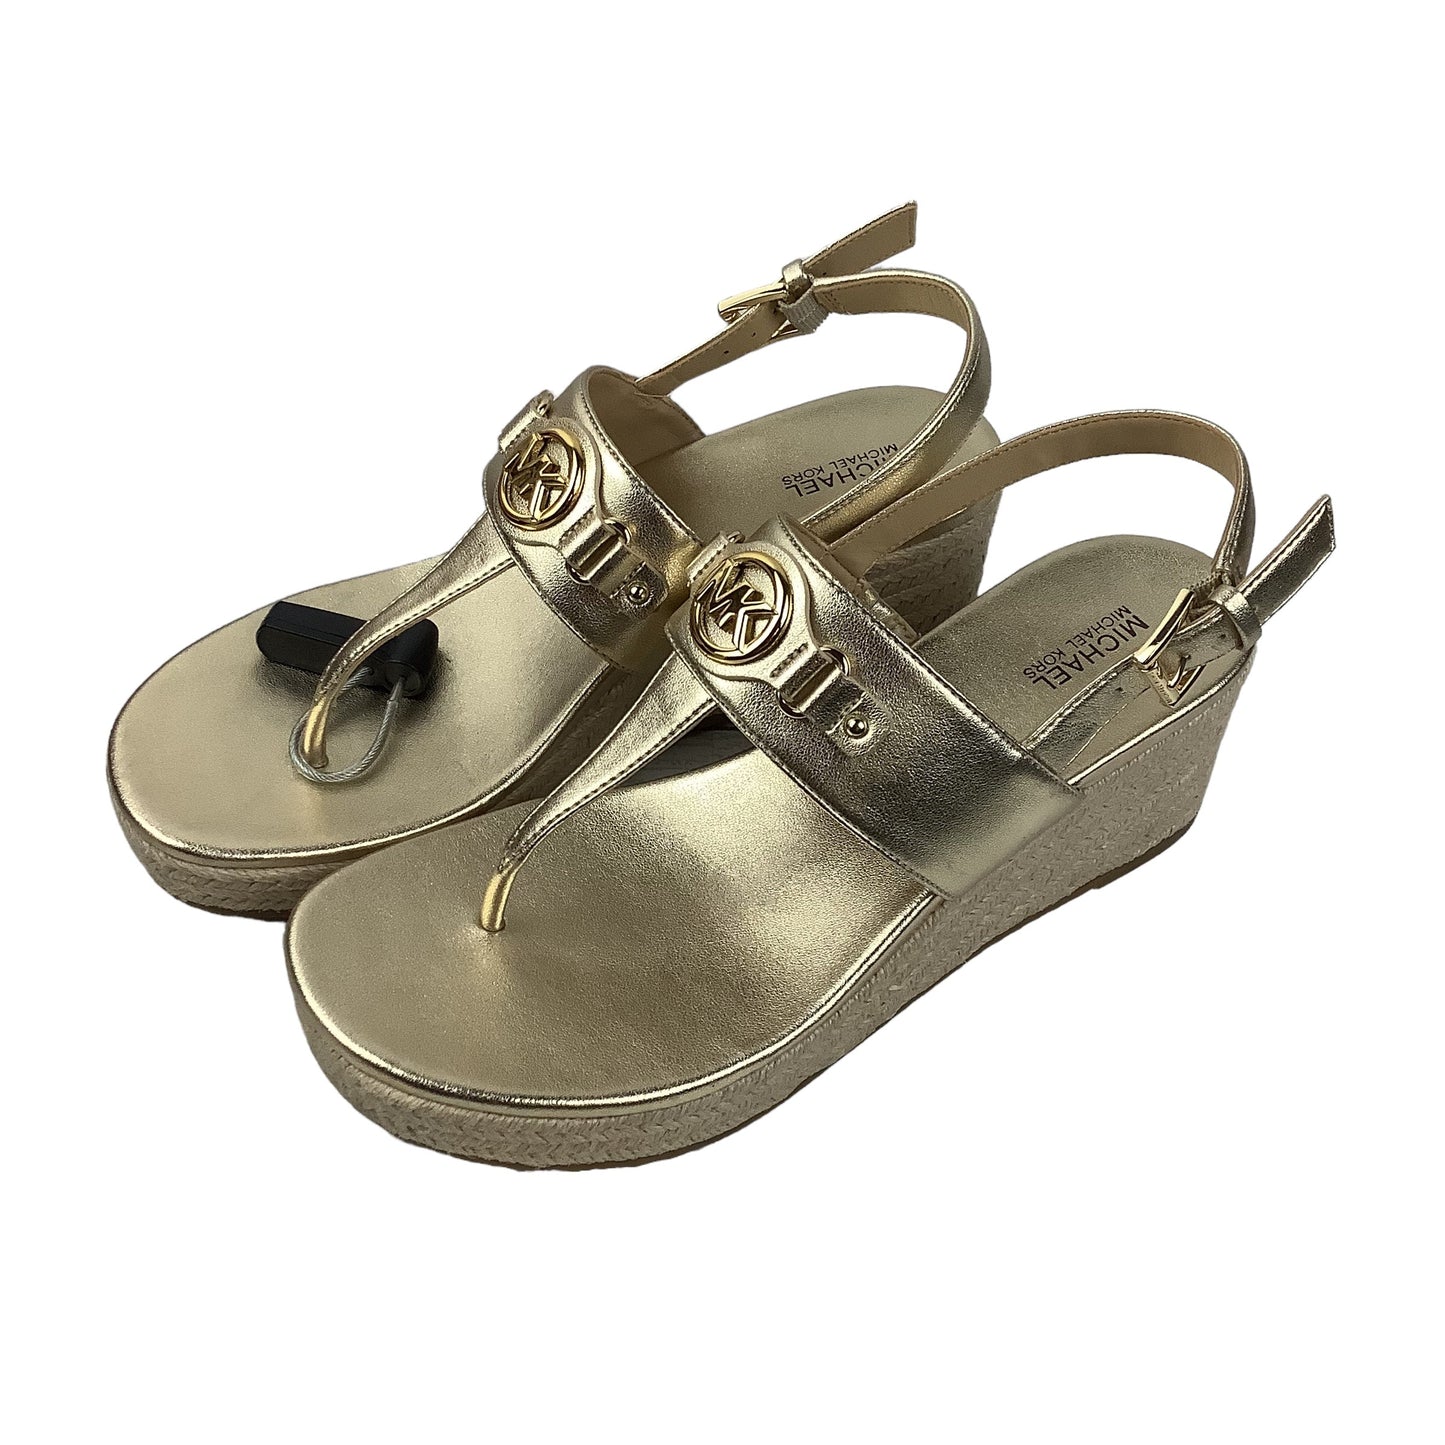 Gold Sandals Designer Michael Kors, Size 7.5